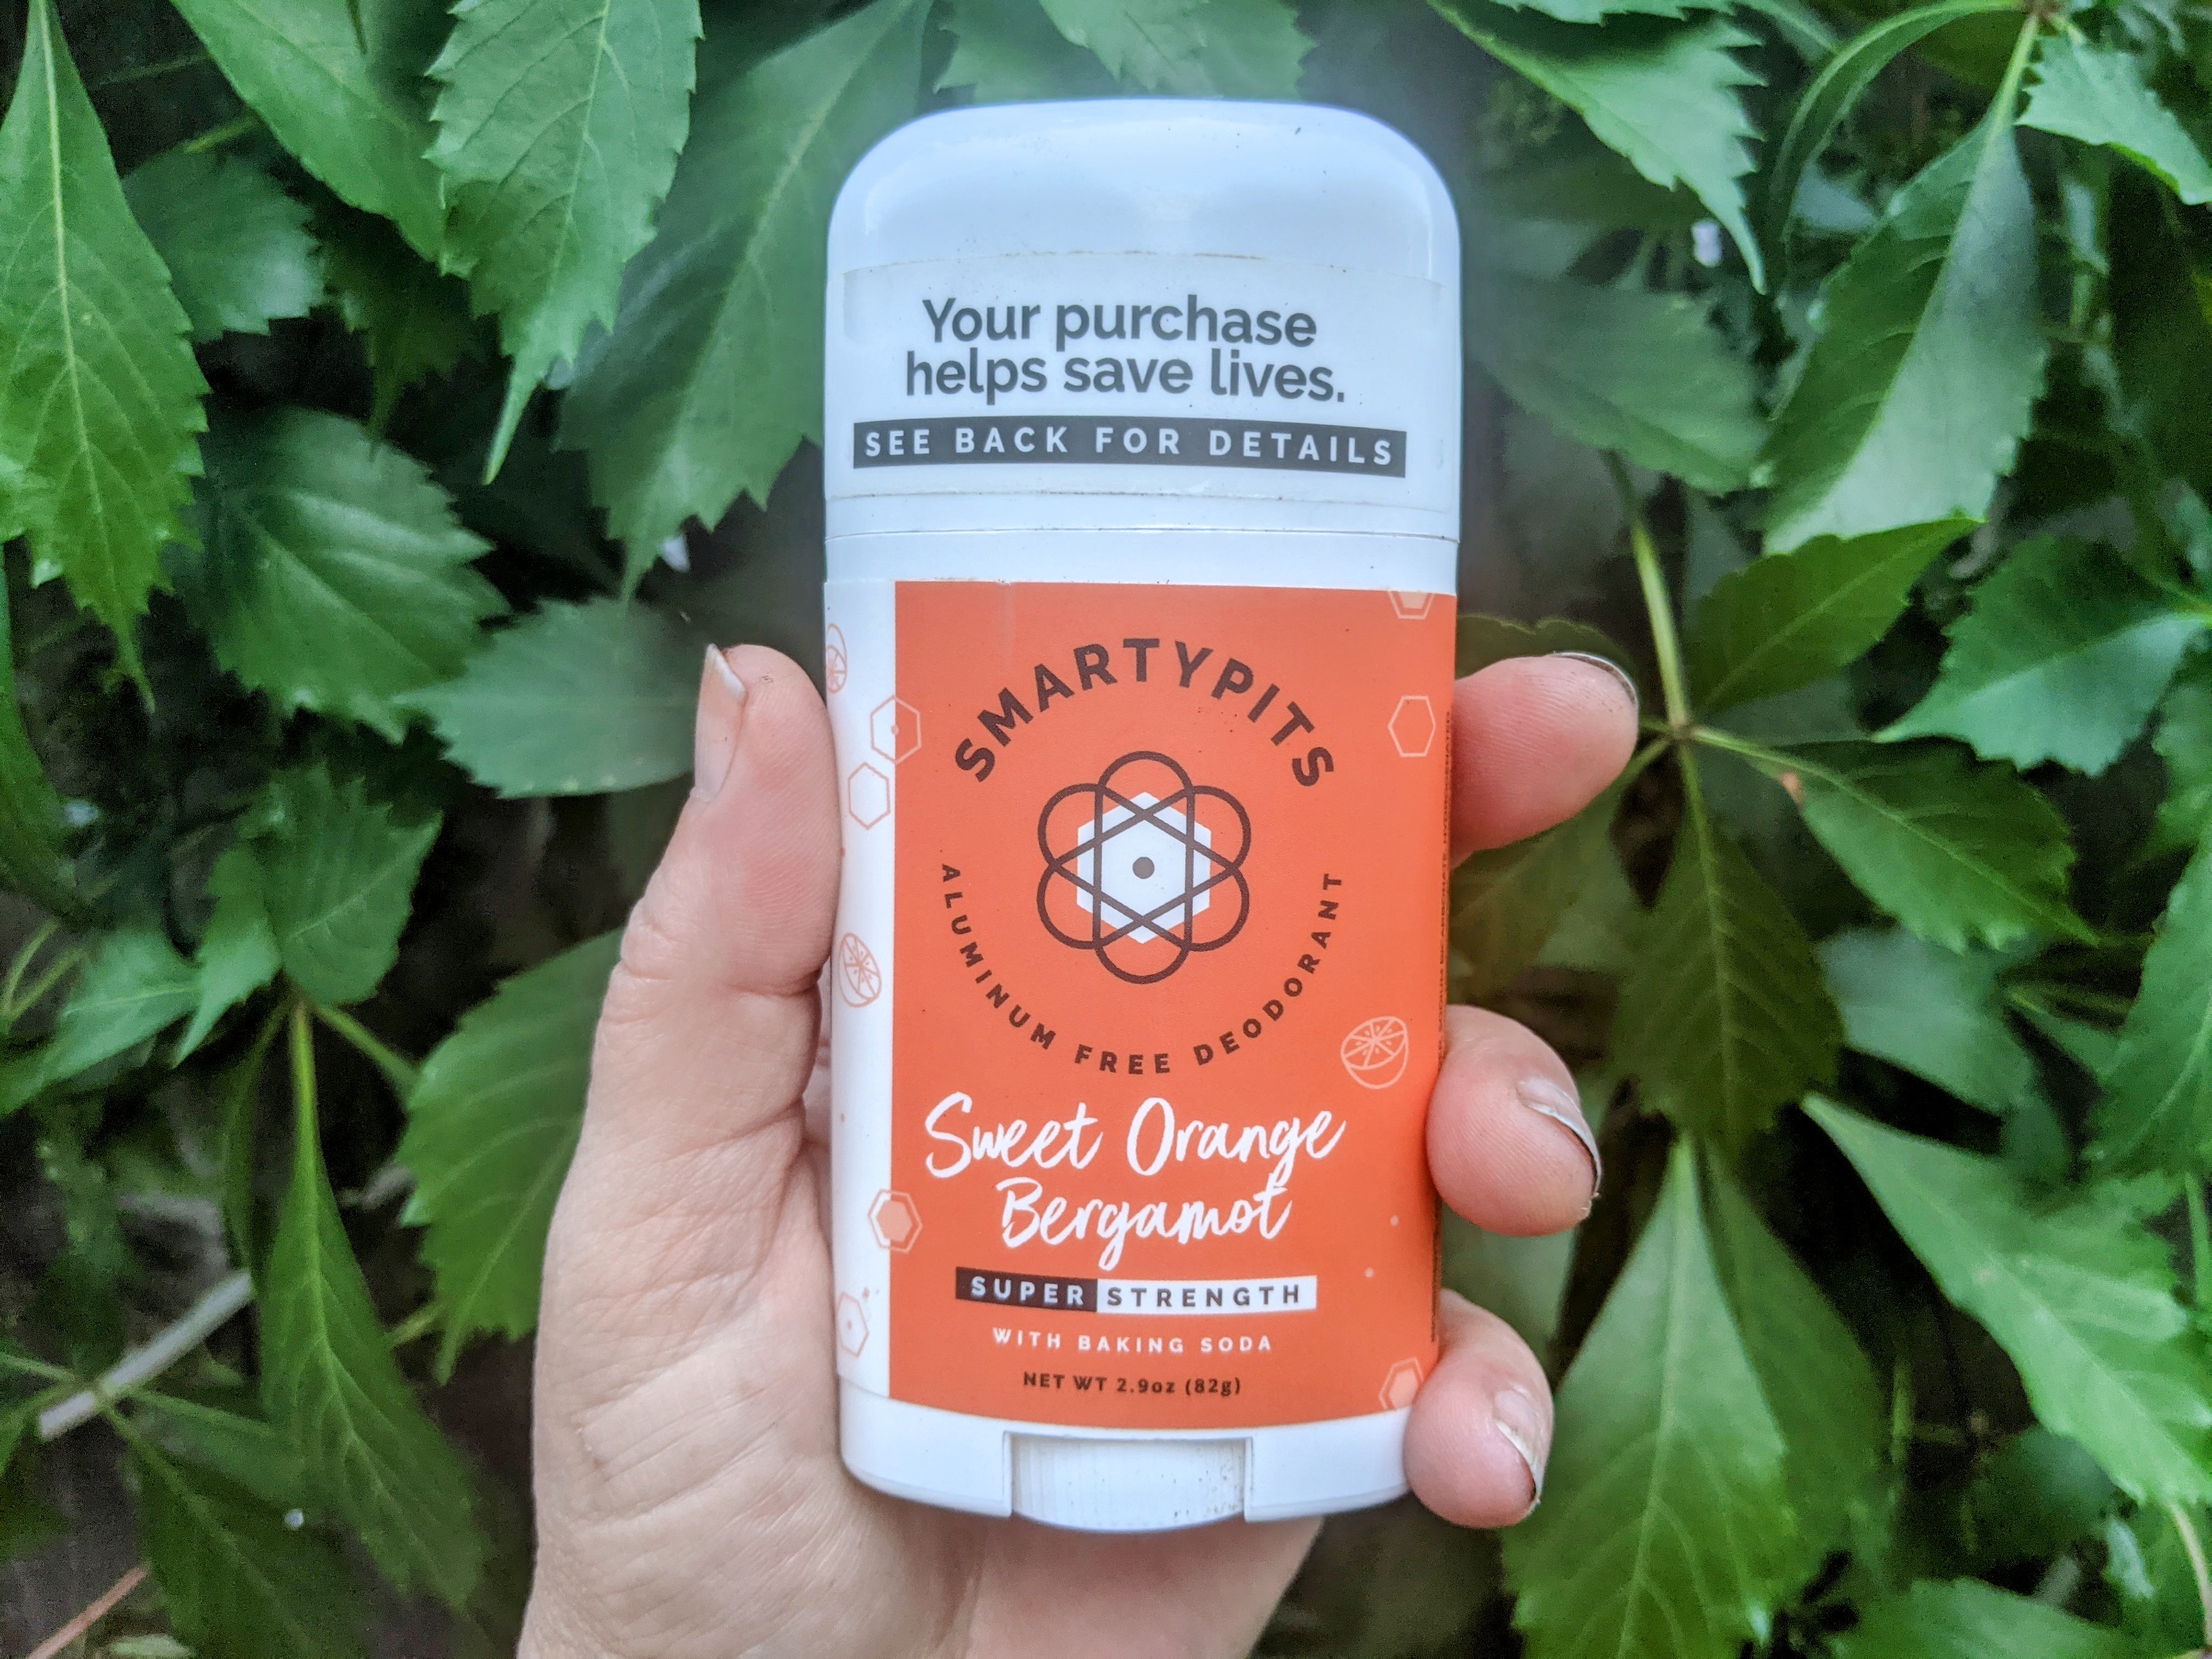 Photo of hand holding up Smarty Pits Sweet Orange Bergamot deodorant against foliage